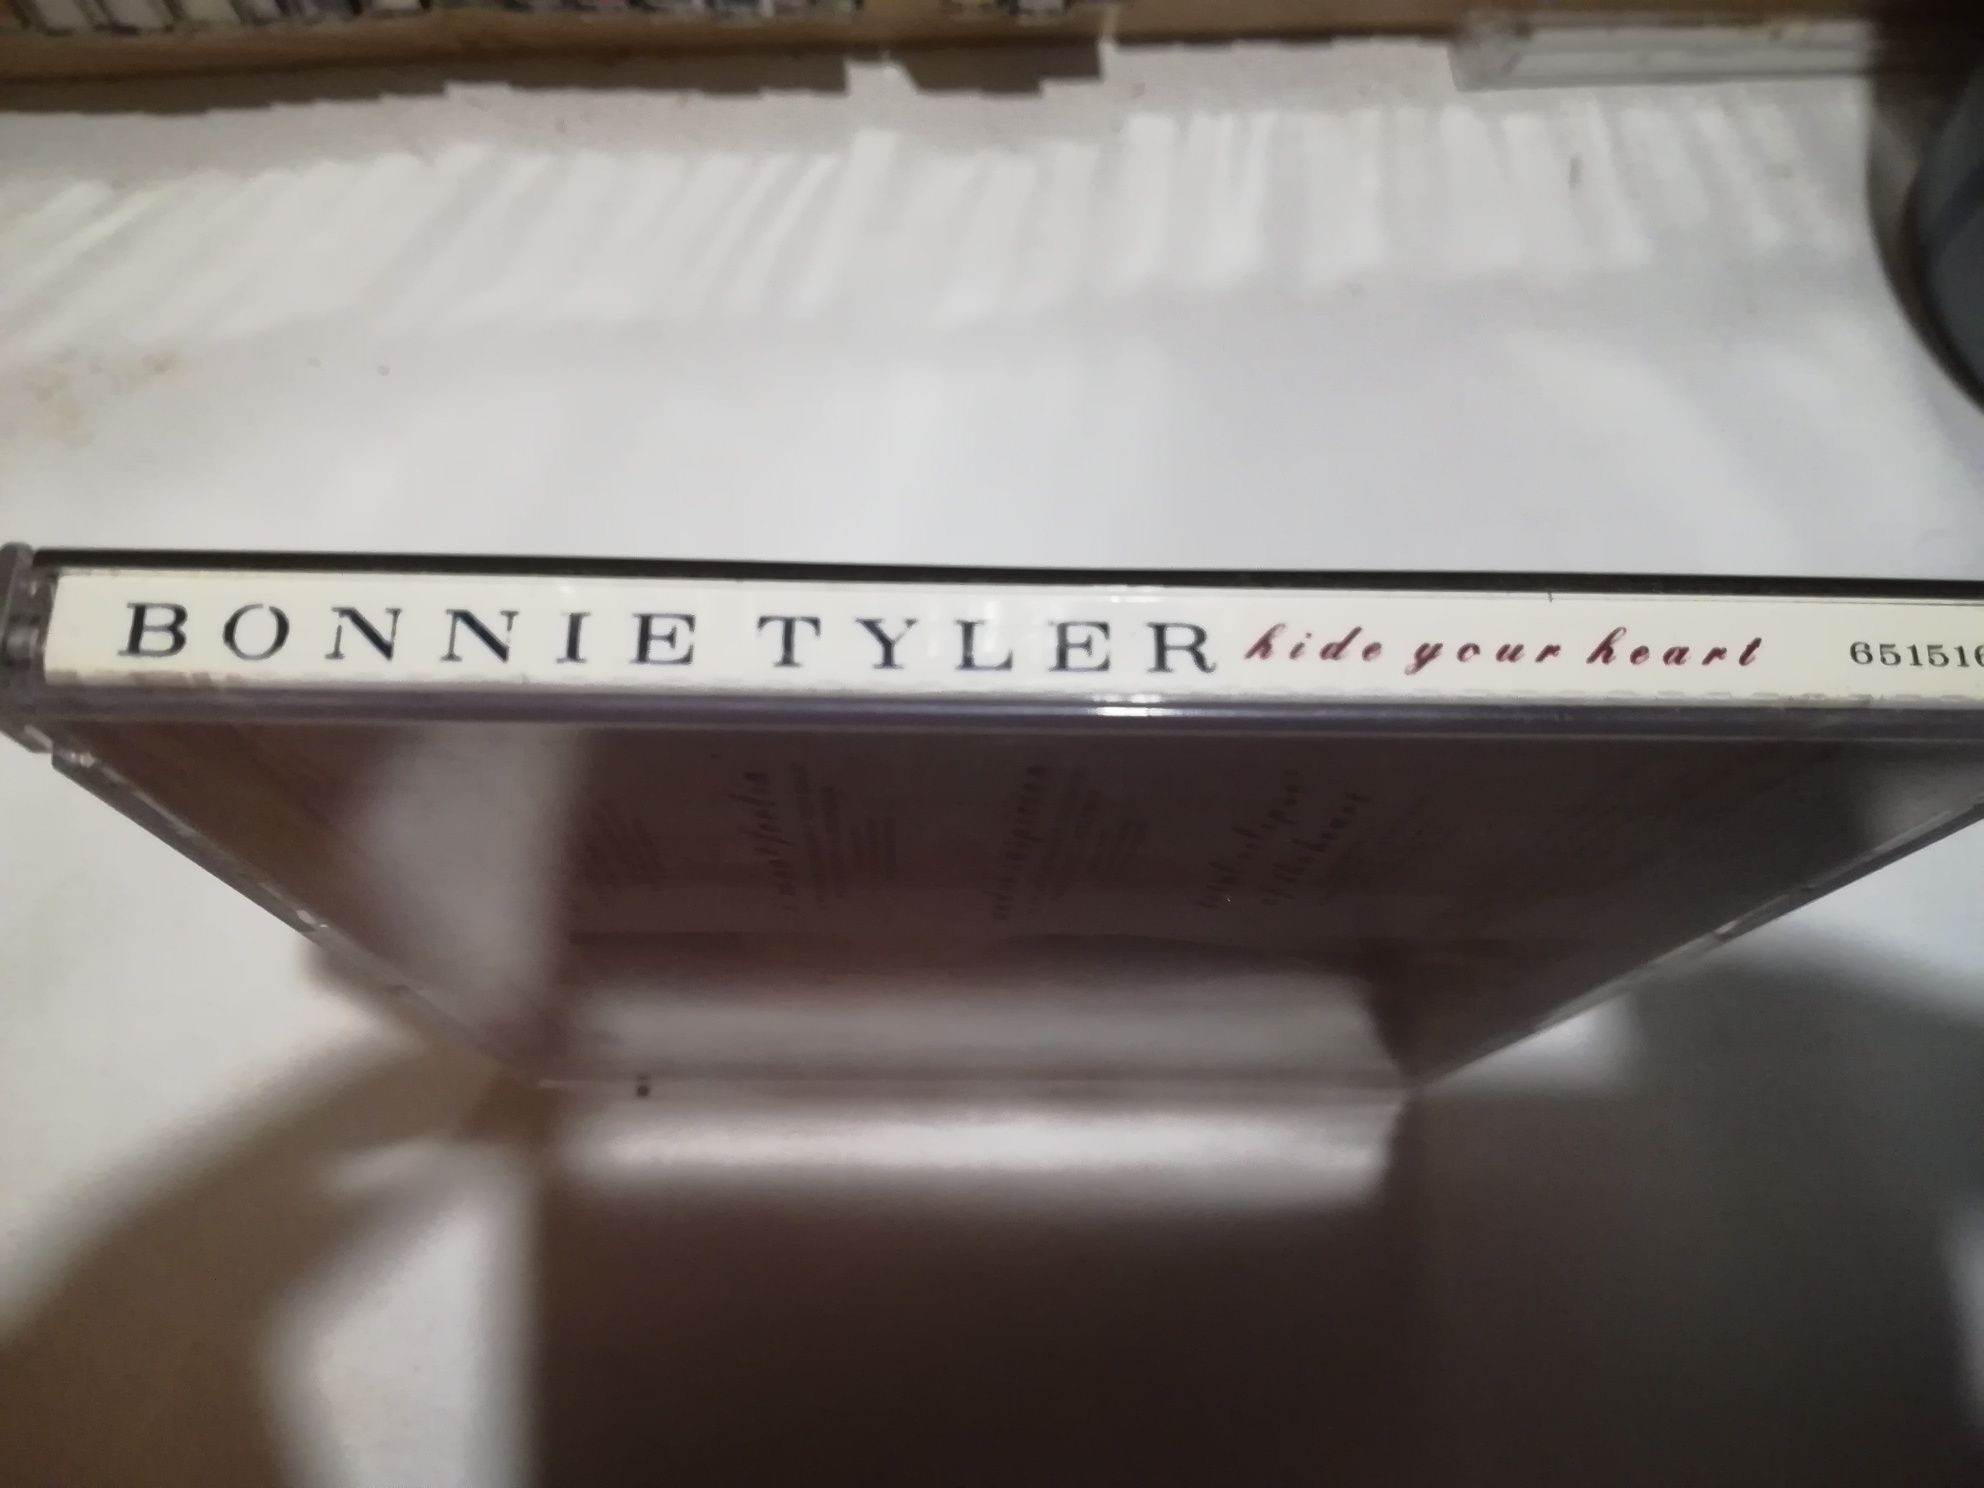 Wyprzedaż kolekcji. Bonnie Tyler